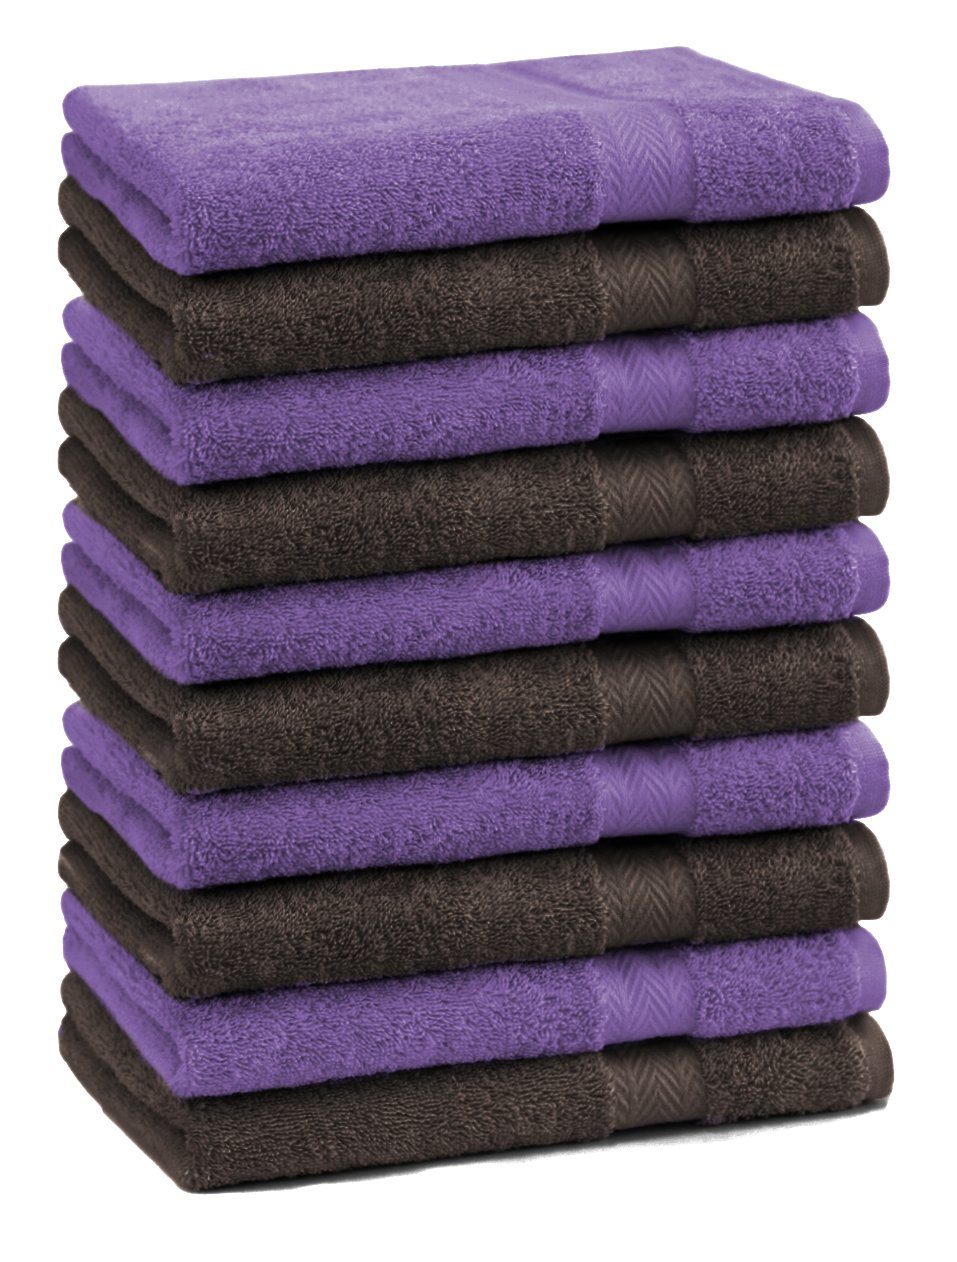 Betz Gästehandtücher 10 Stück und Gästetuch-Set 30x50 cm Baumwolle Farbe dunkelbraun 100% 100% lila, Gästehandtücher Baumwolle Premium